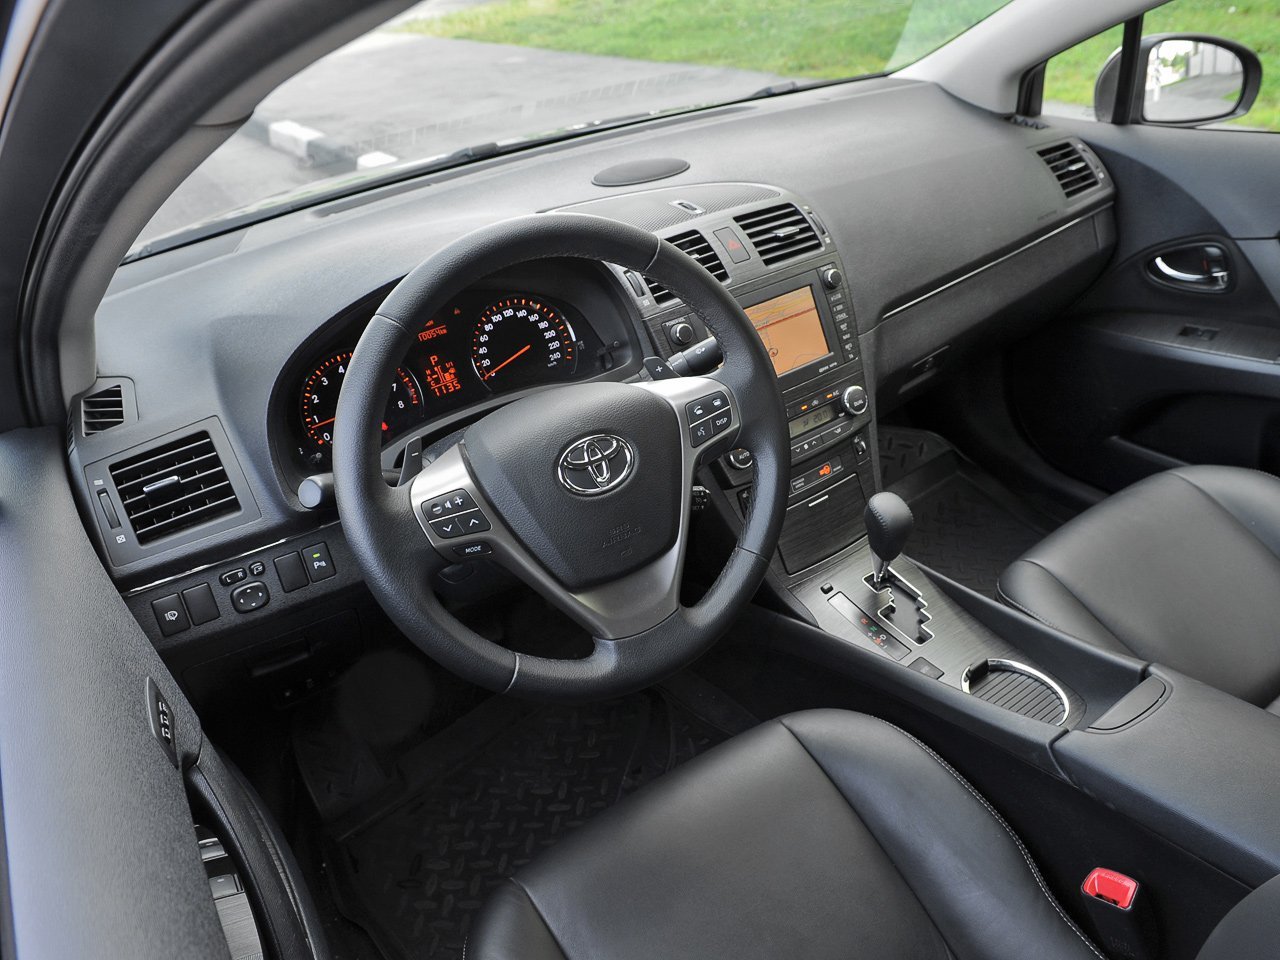 универсал Toyota Avensis 2009 - 2011г выпуска модификация 1.6 MT (132 л.с.)